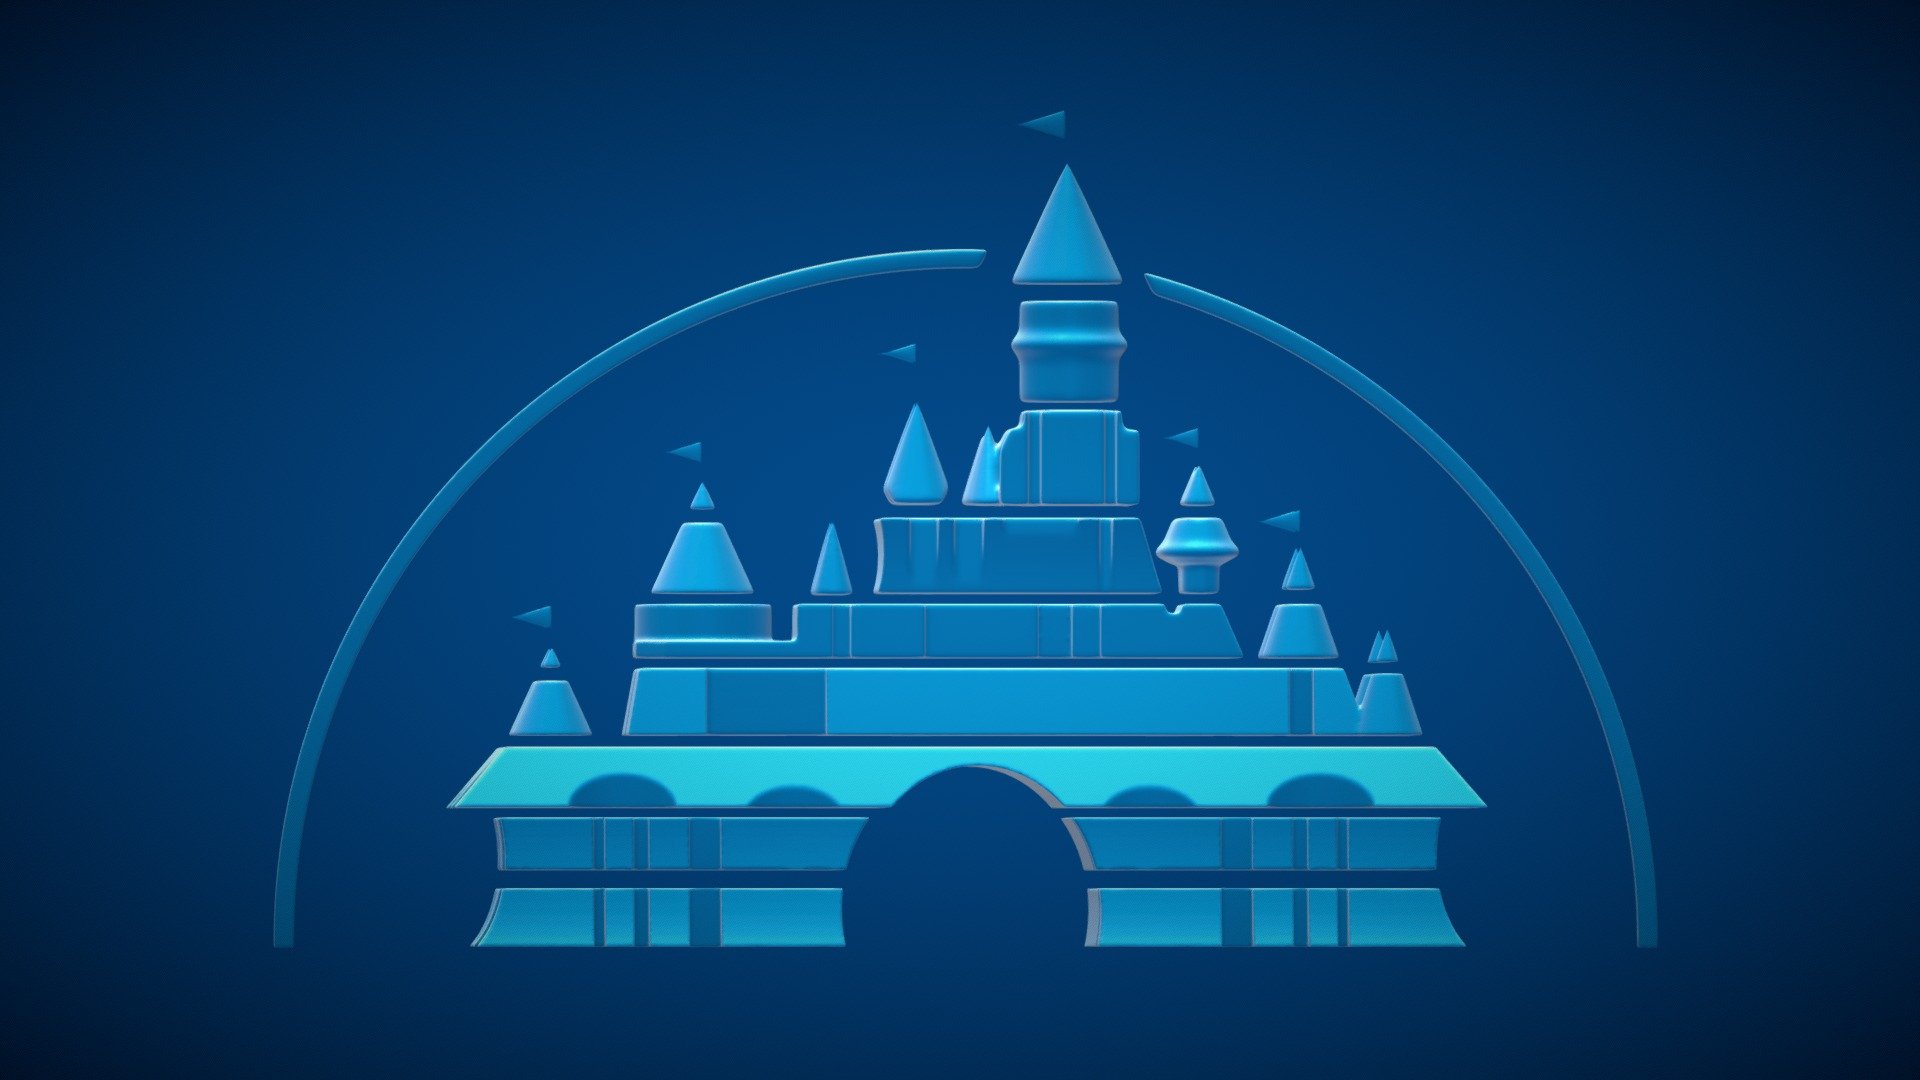 Disney Castle Logo Style Buy Royalty Free 3d Model By Kempfgrafik